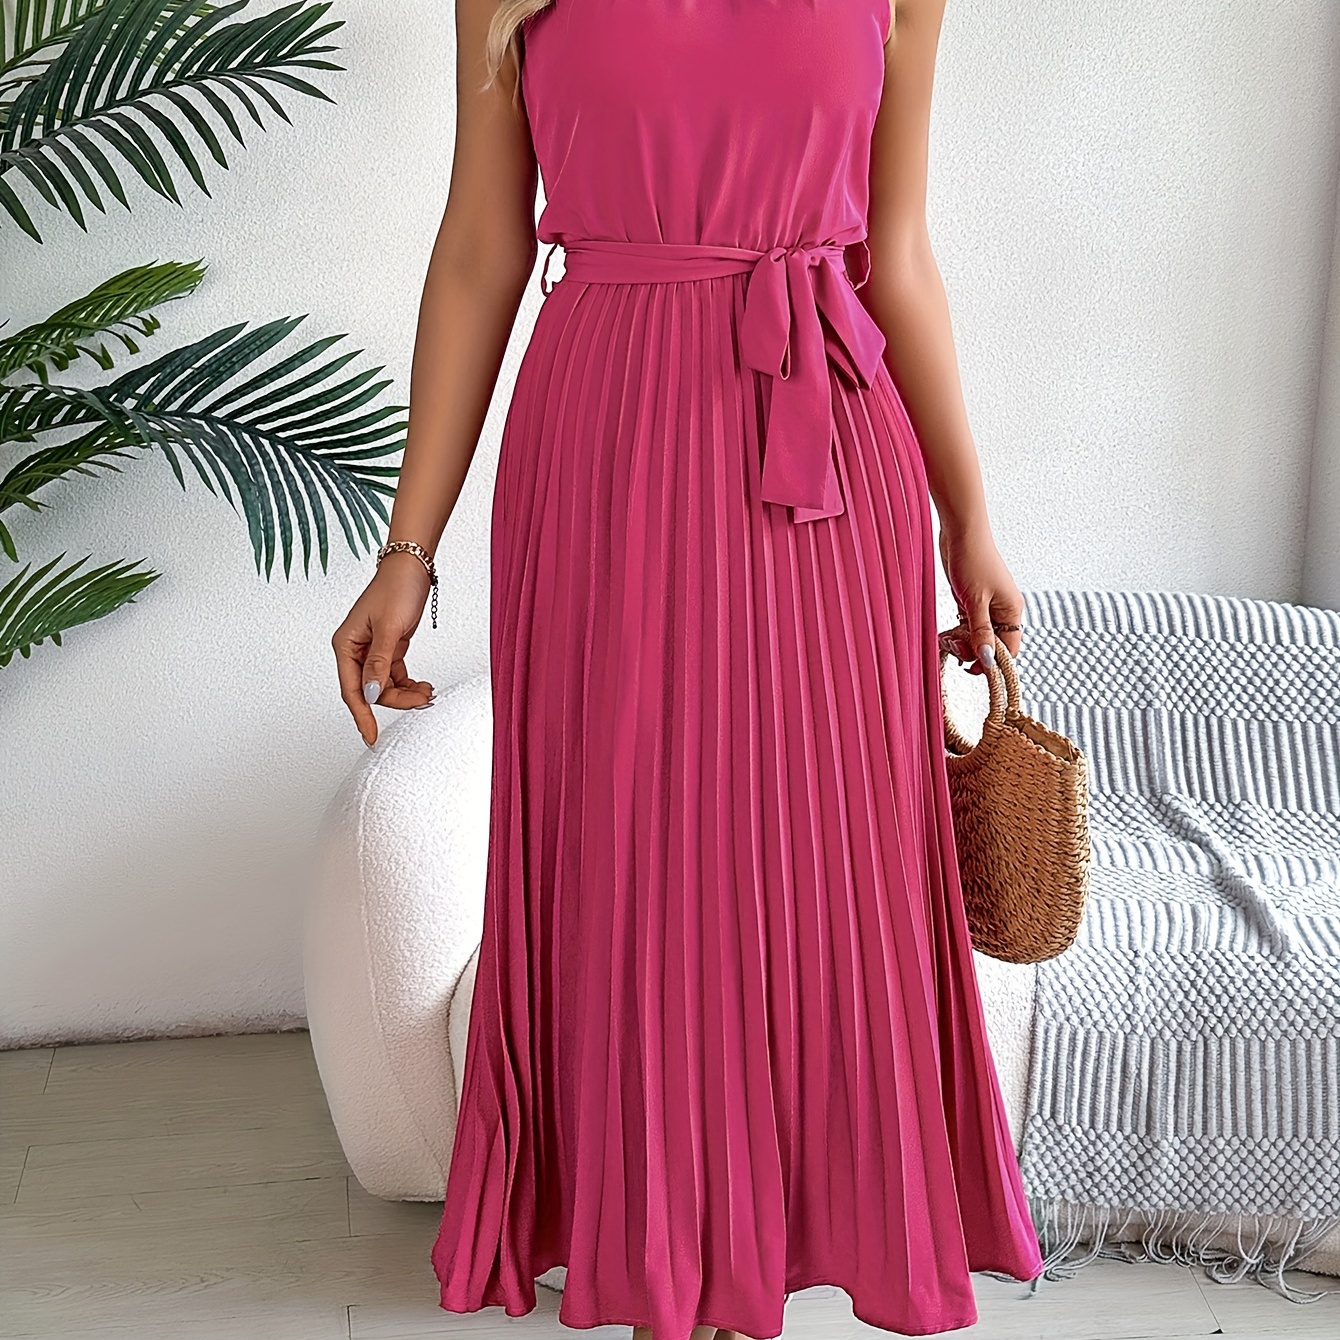 

Swiss Dot Ankle Length Dress, Elegant Sleeveless Dress For Spring & Summer, Women's Clothing